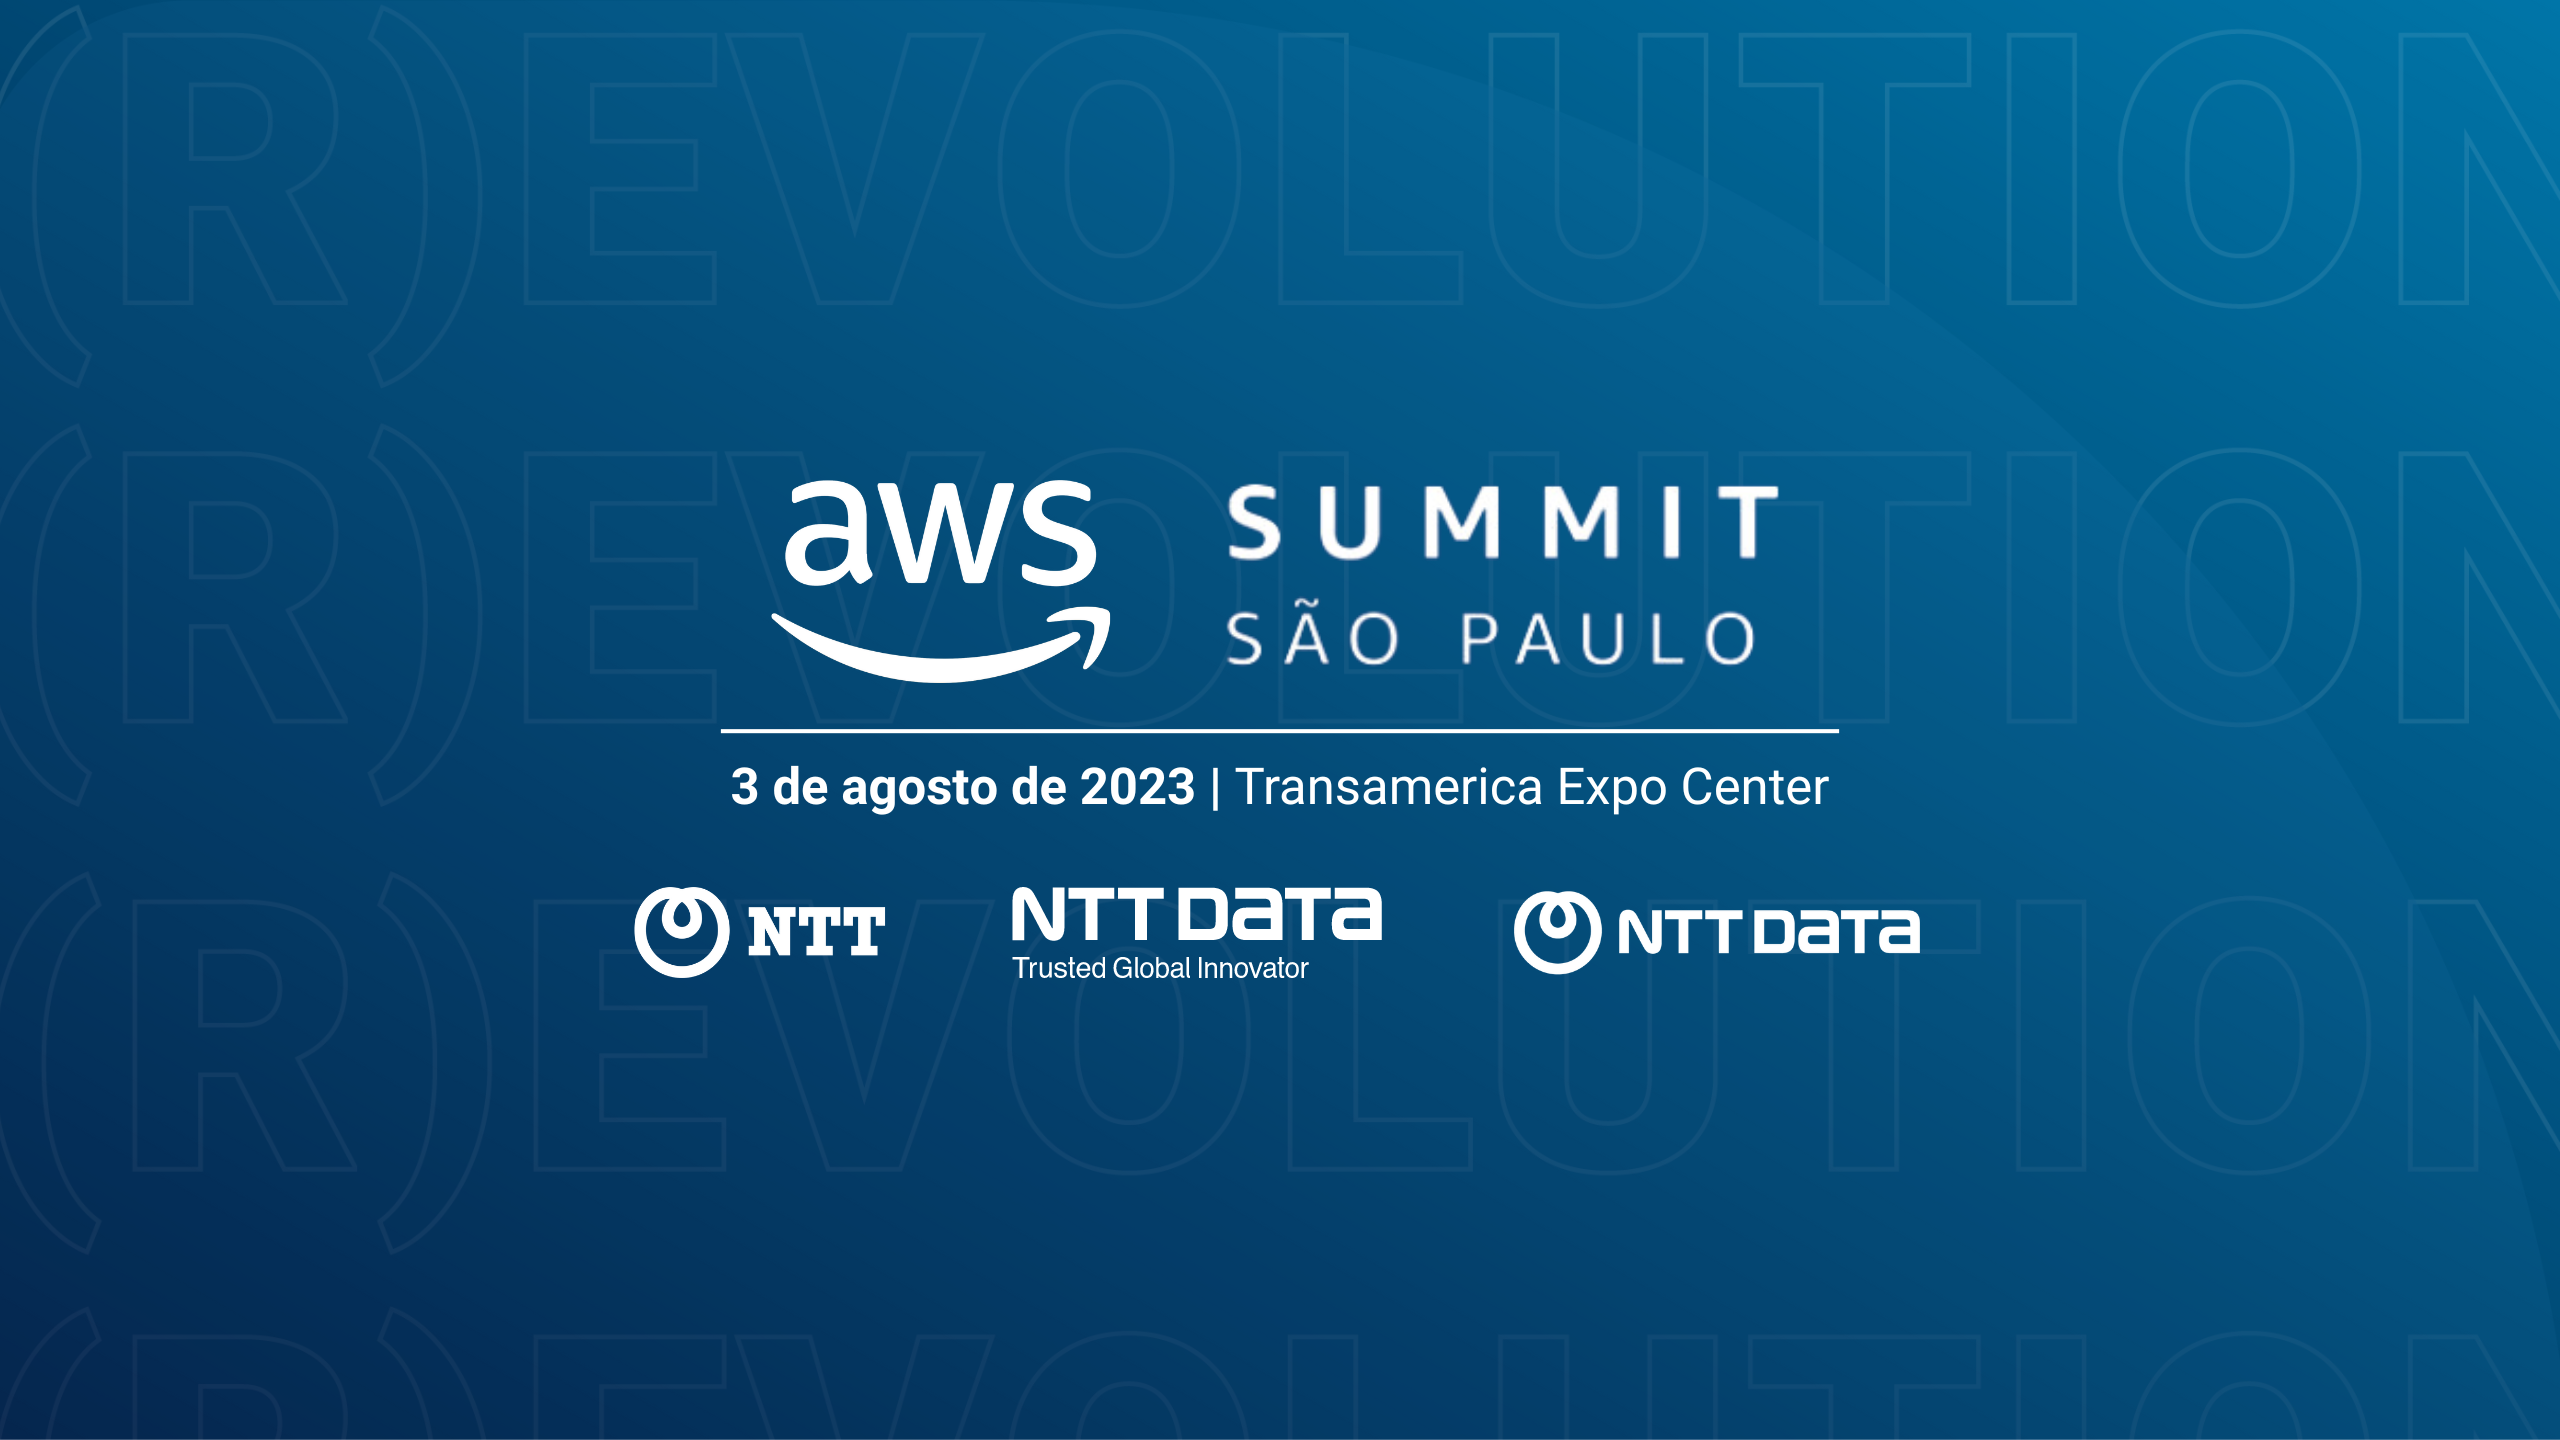 AWS Summit 2023 São Paulo